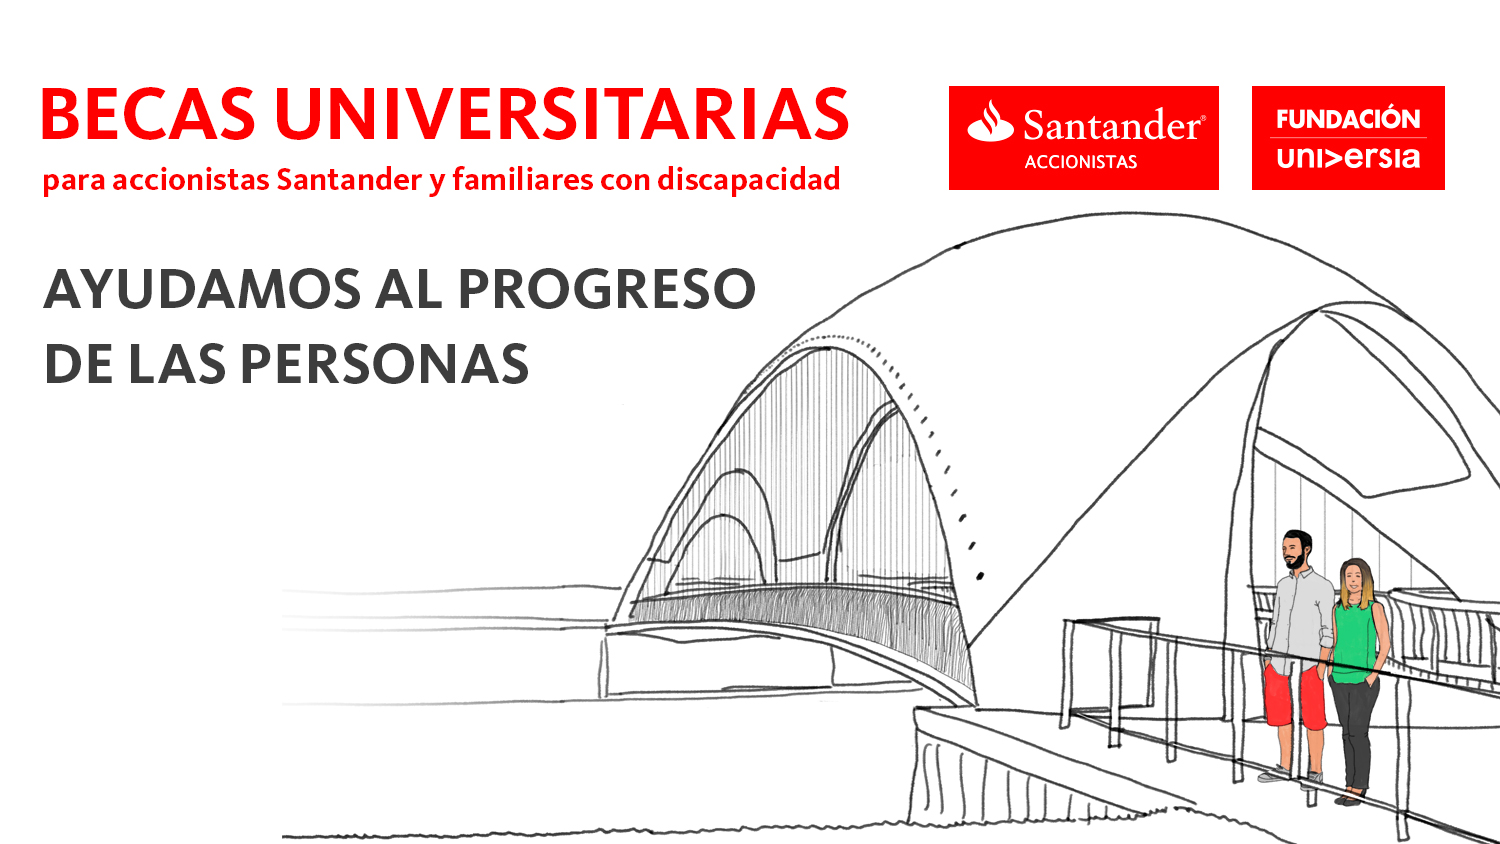 Becas Fundación Universia para accionistas Santander y familiares